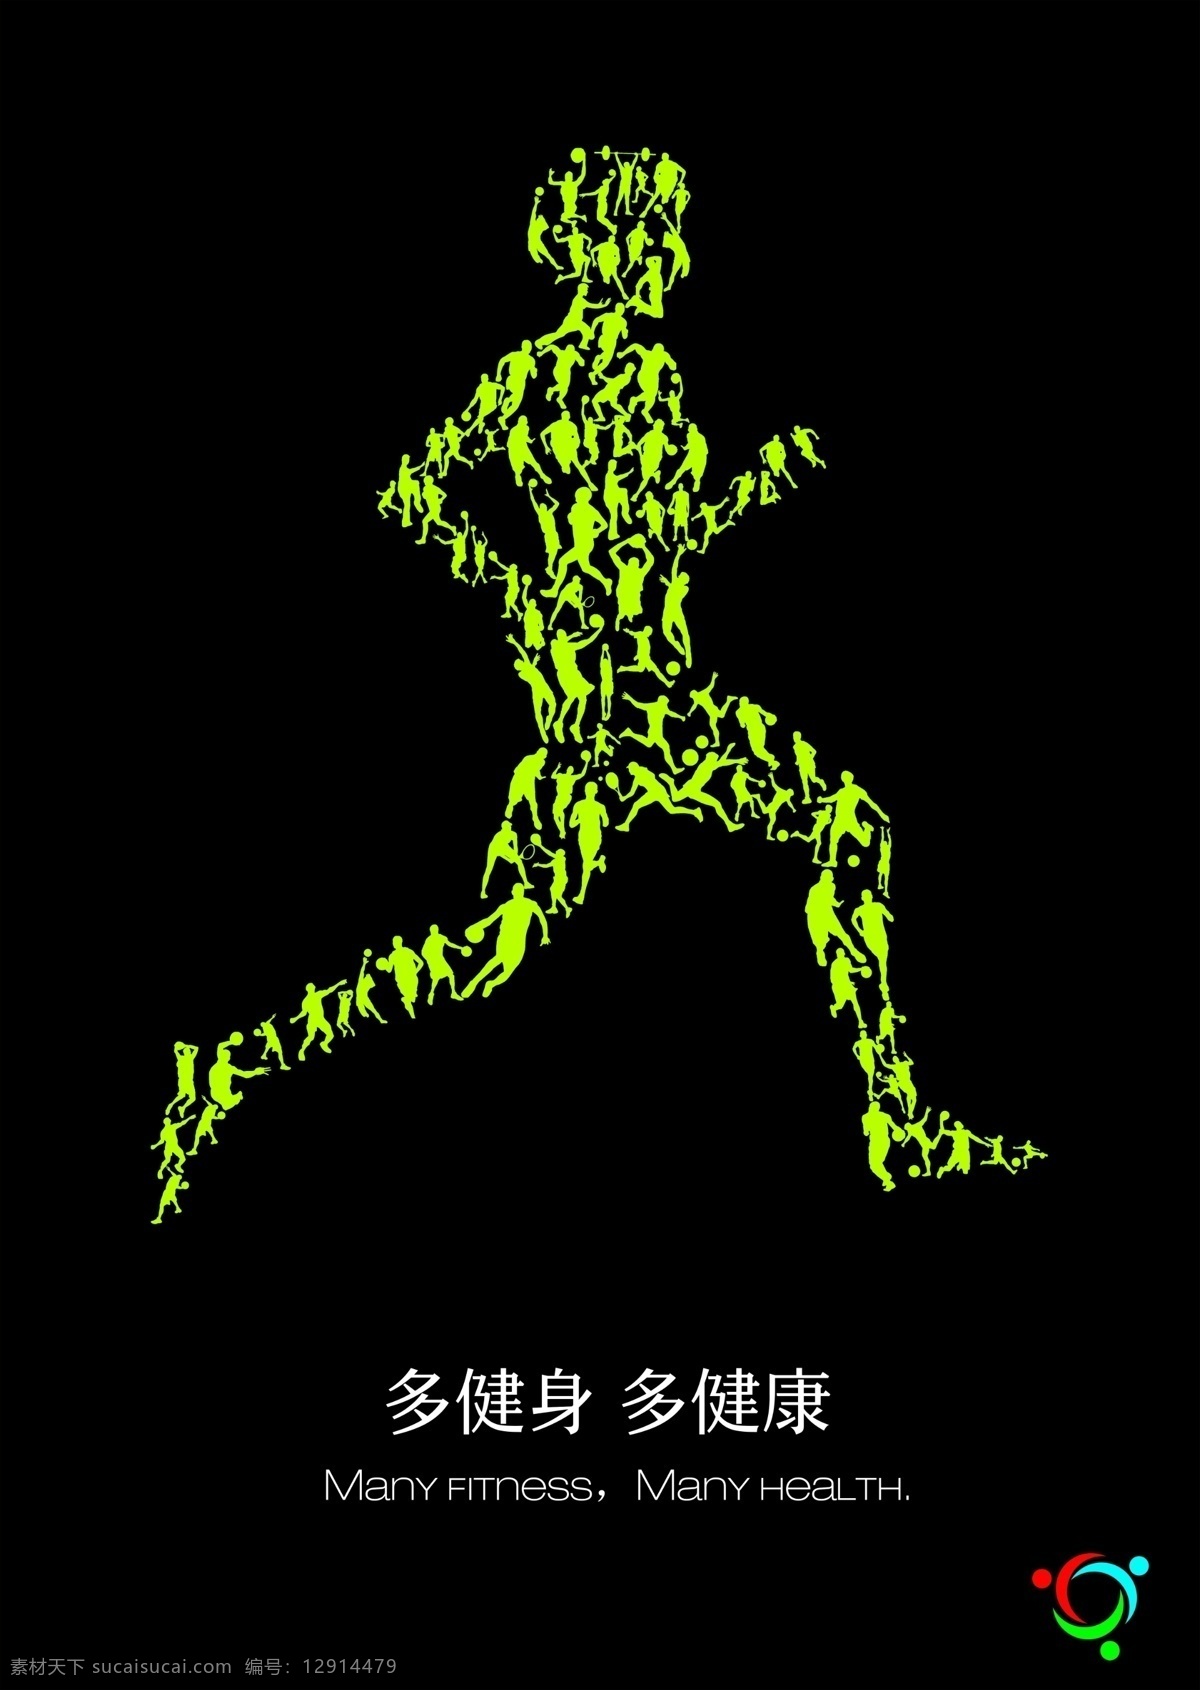 健身公益海报 健身海报 公益海报 健身 公益 运动 健康 跑步 人物 创意 宣传 锻炼 身体